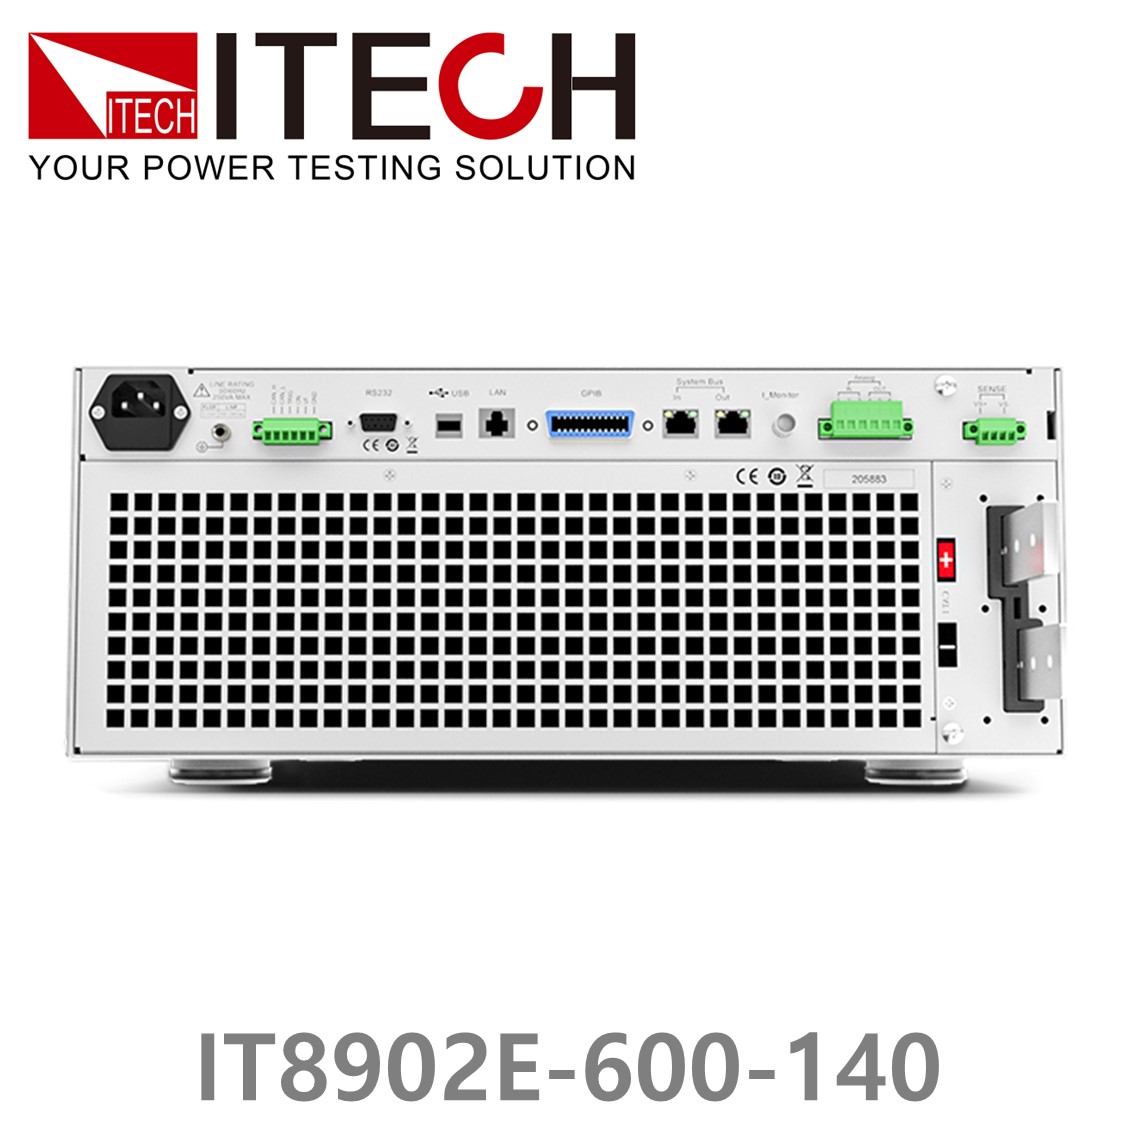 [ ITECH ] IT8902E-600-140 고성능 고전력 DC 전자로드 600V/140A/2kW (4U)